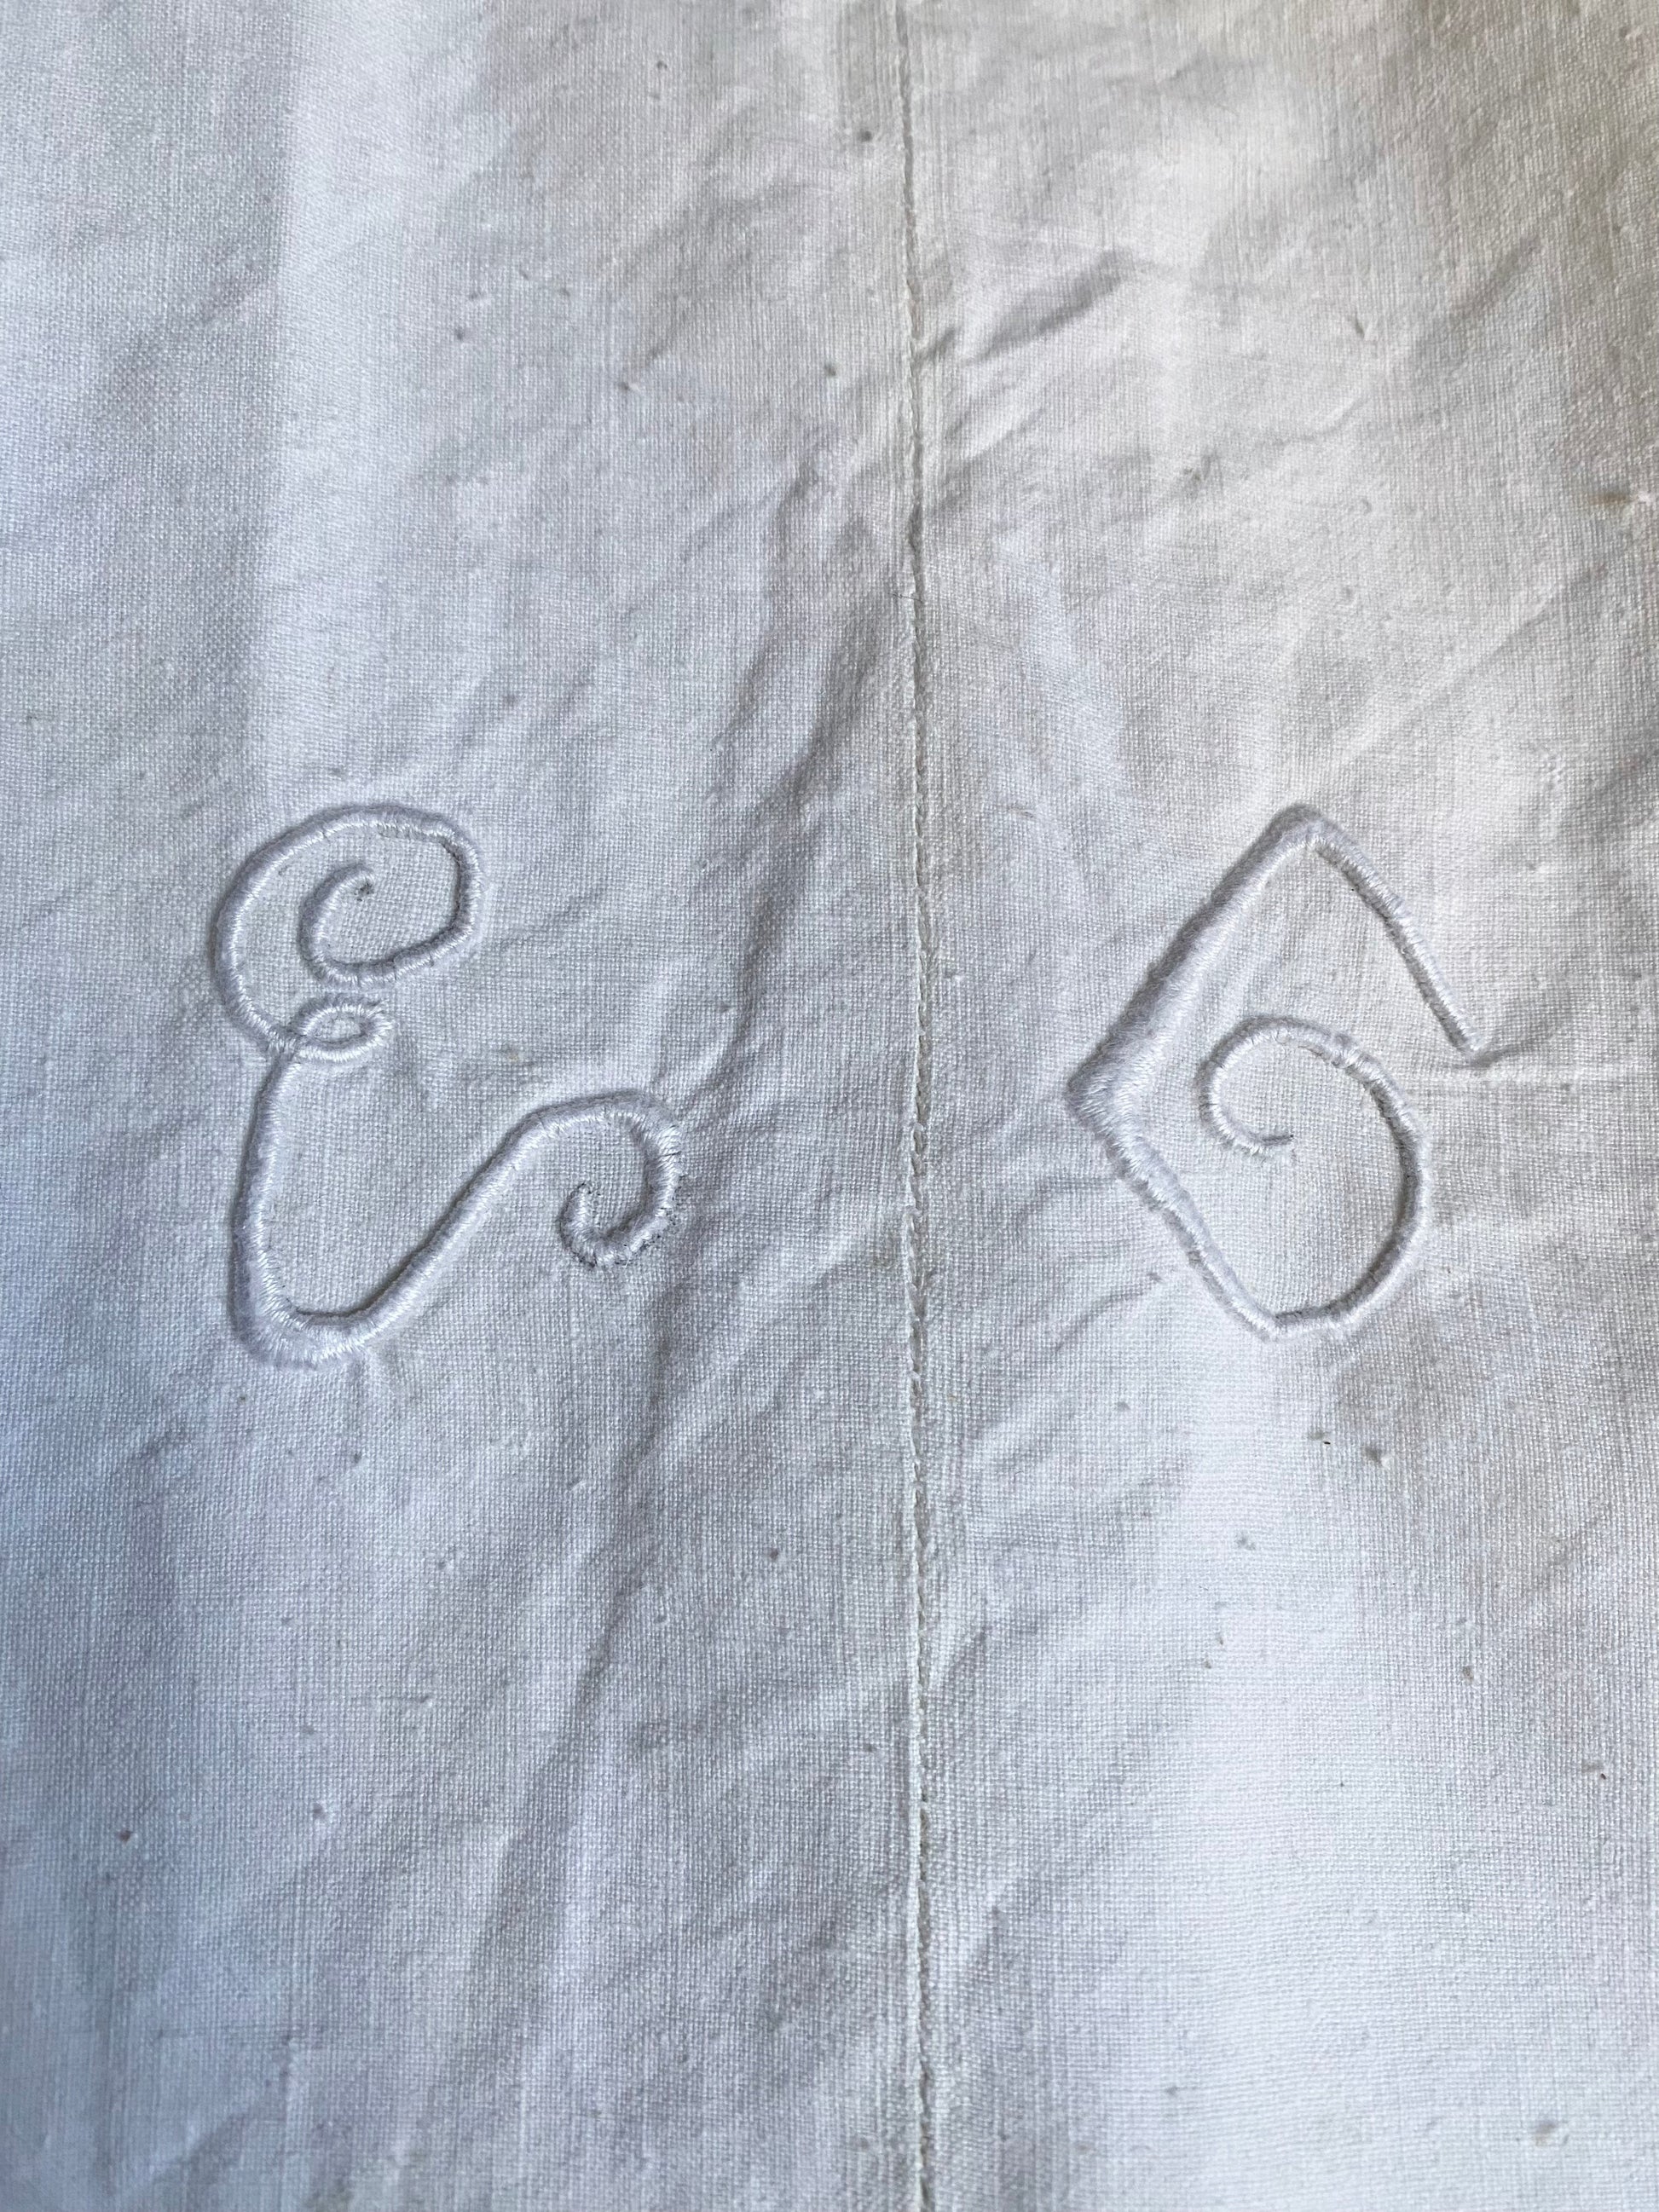 Grembiule per donna da cucina in cotone antico con monogramma – Cecibirbona